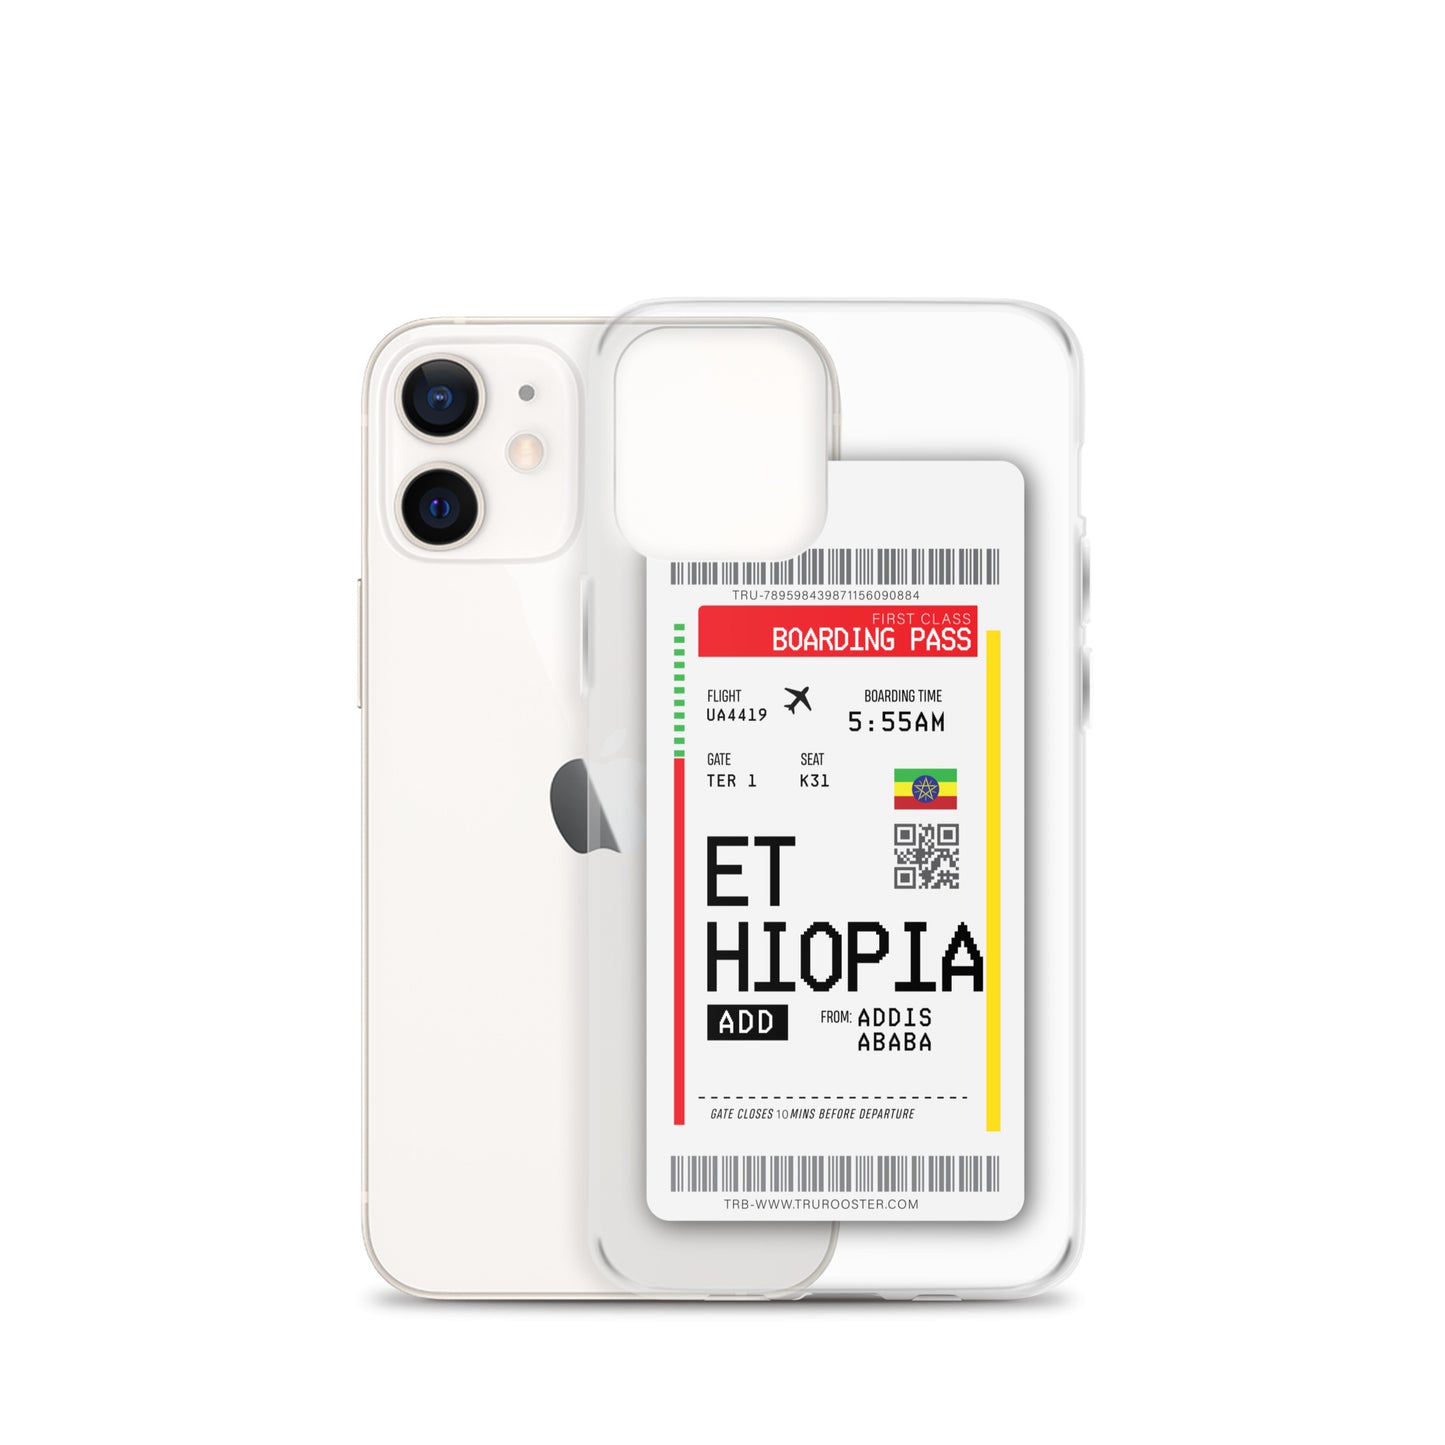 Ethiopia Transit Boarding pass iPhone Case